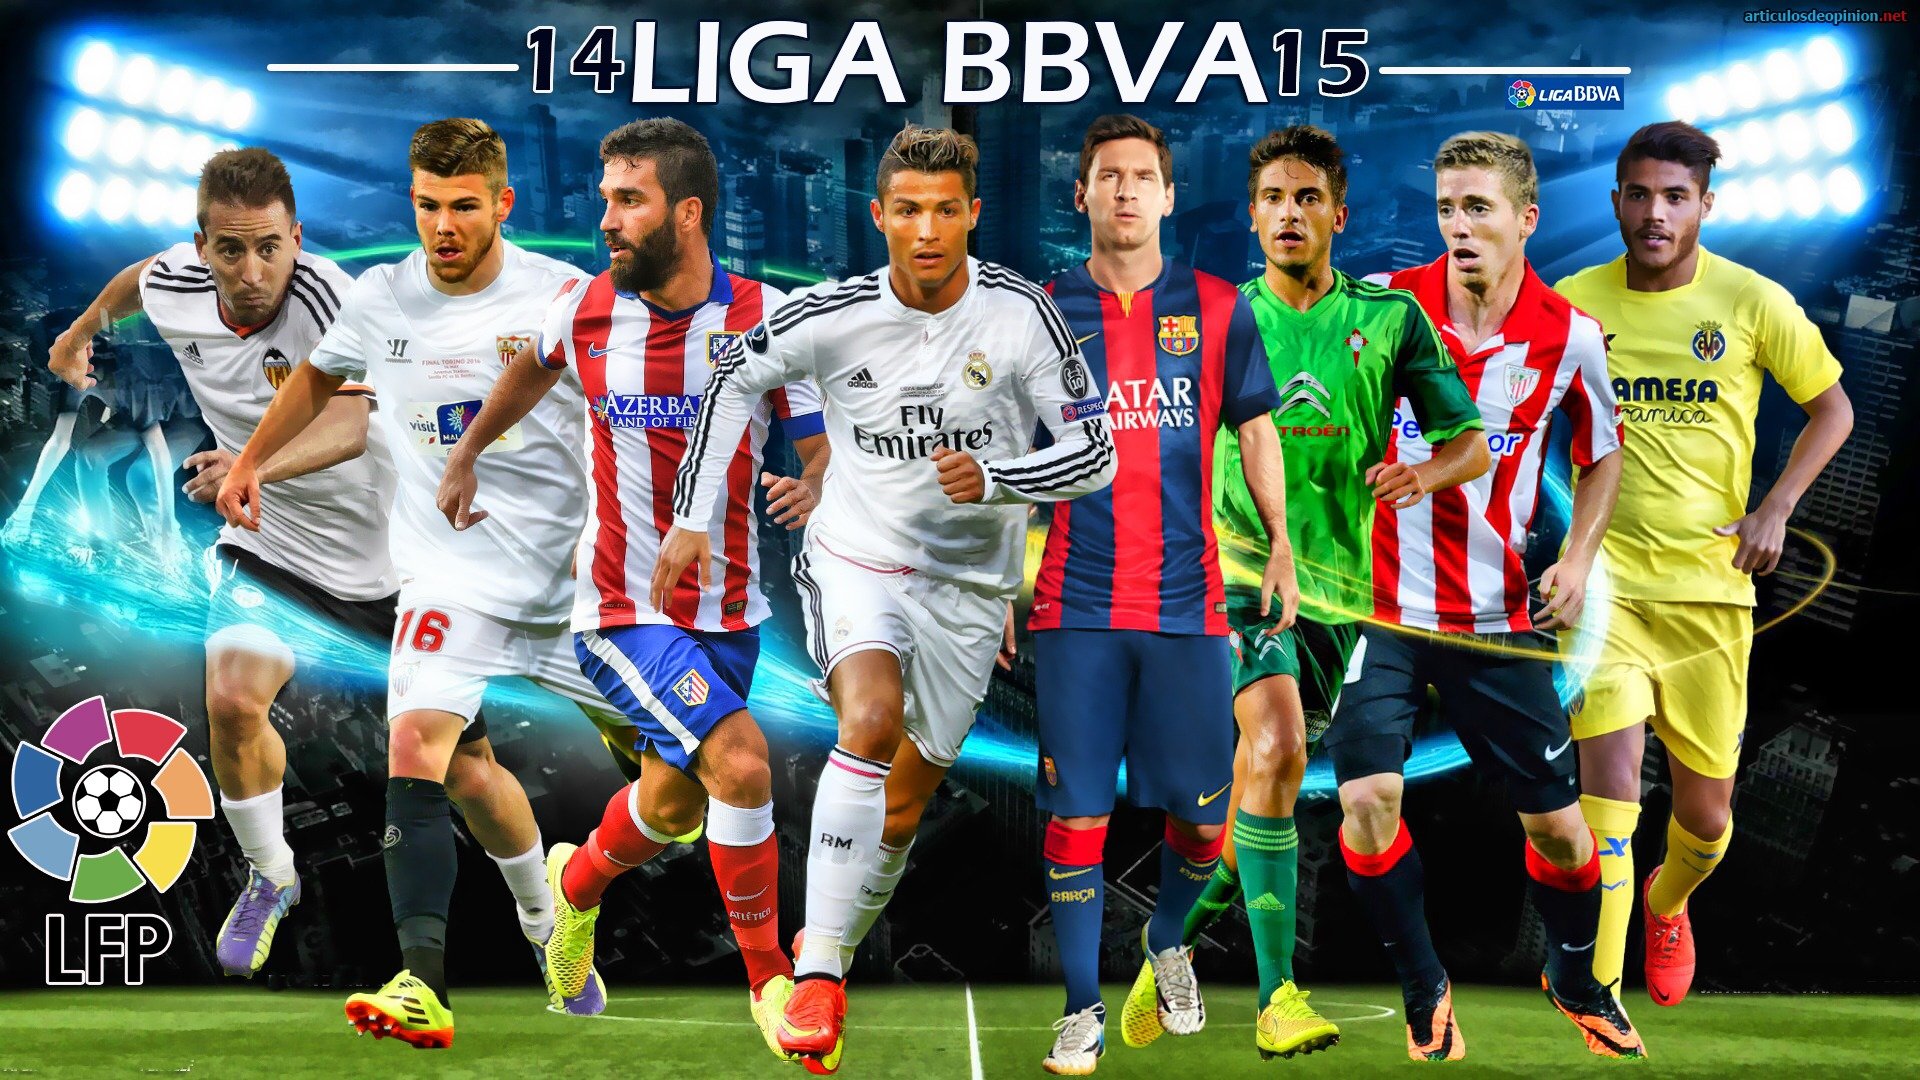 Liga BBVA 2014-15